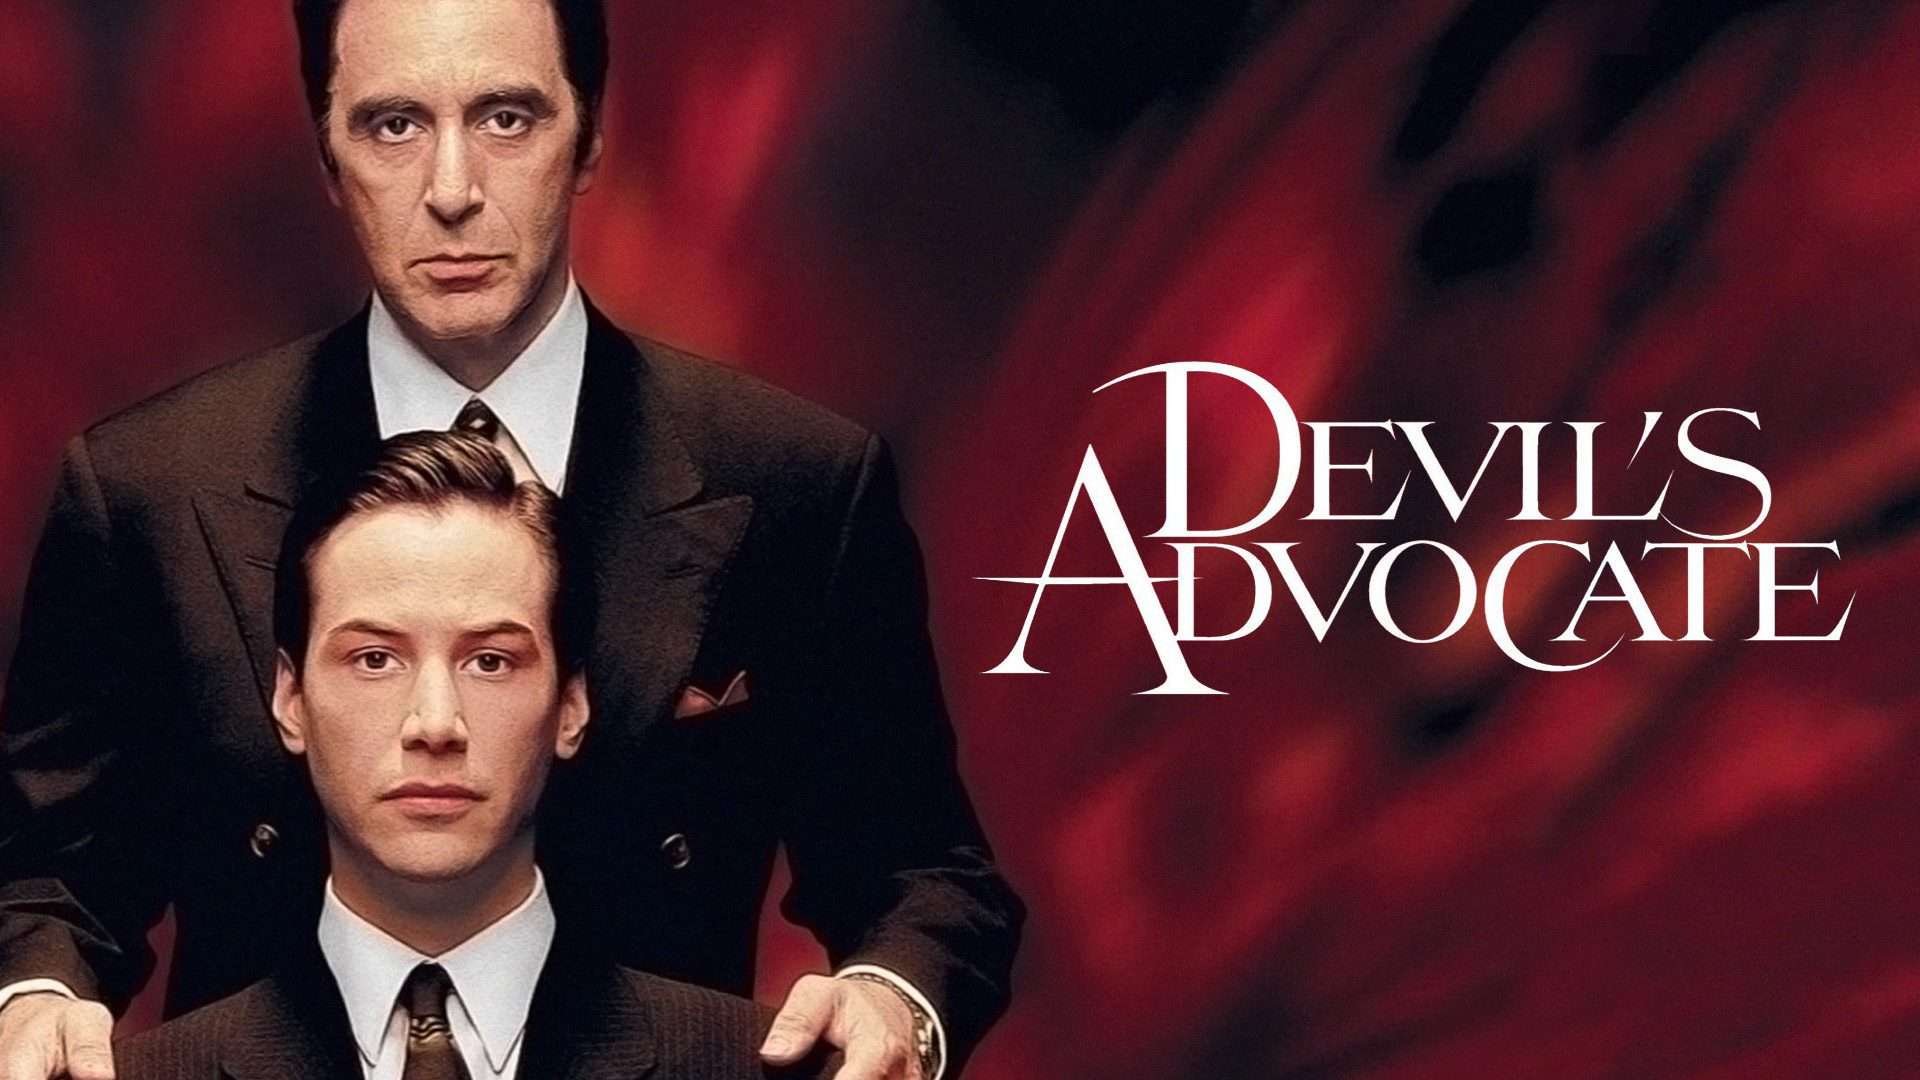 The Devil’s Advocate (1997